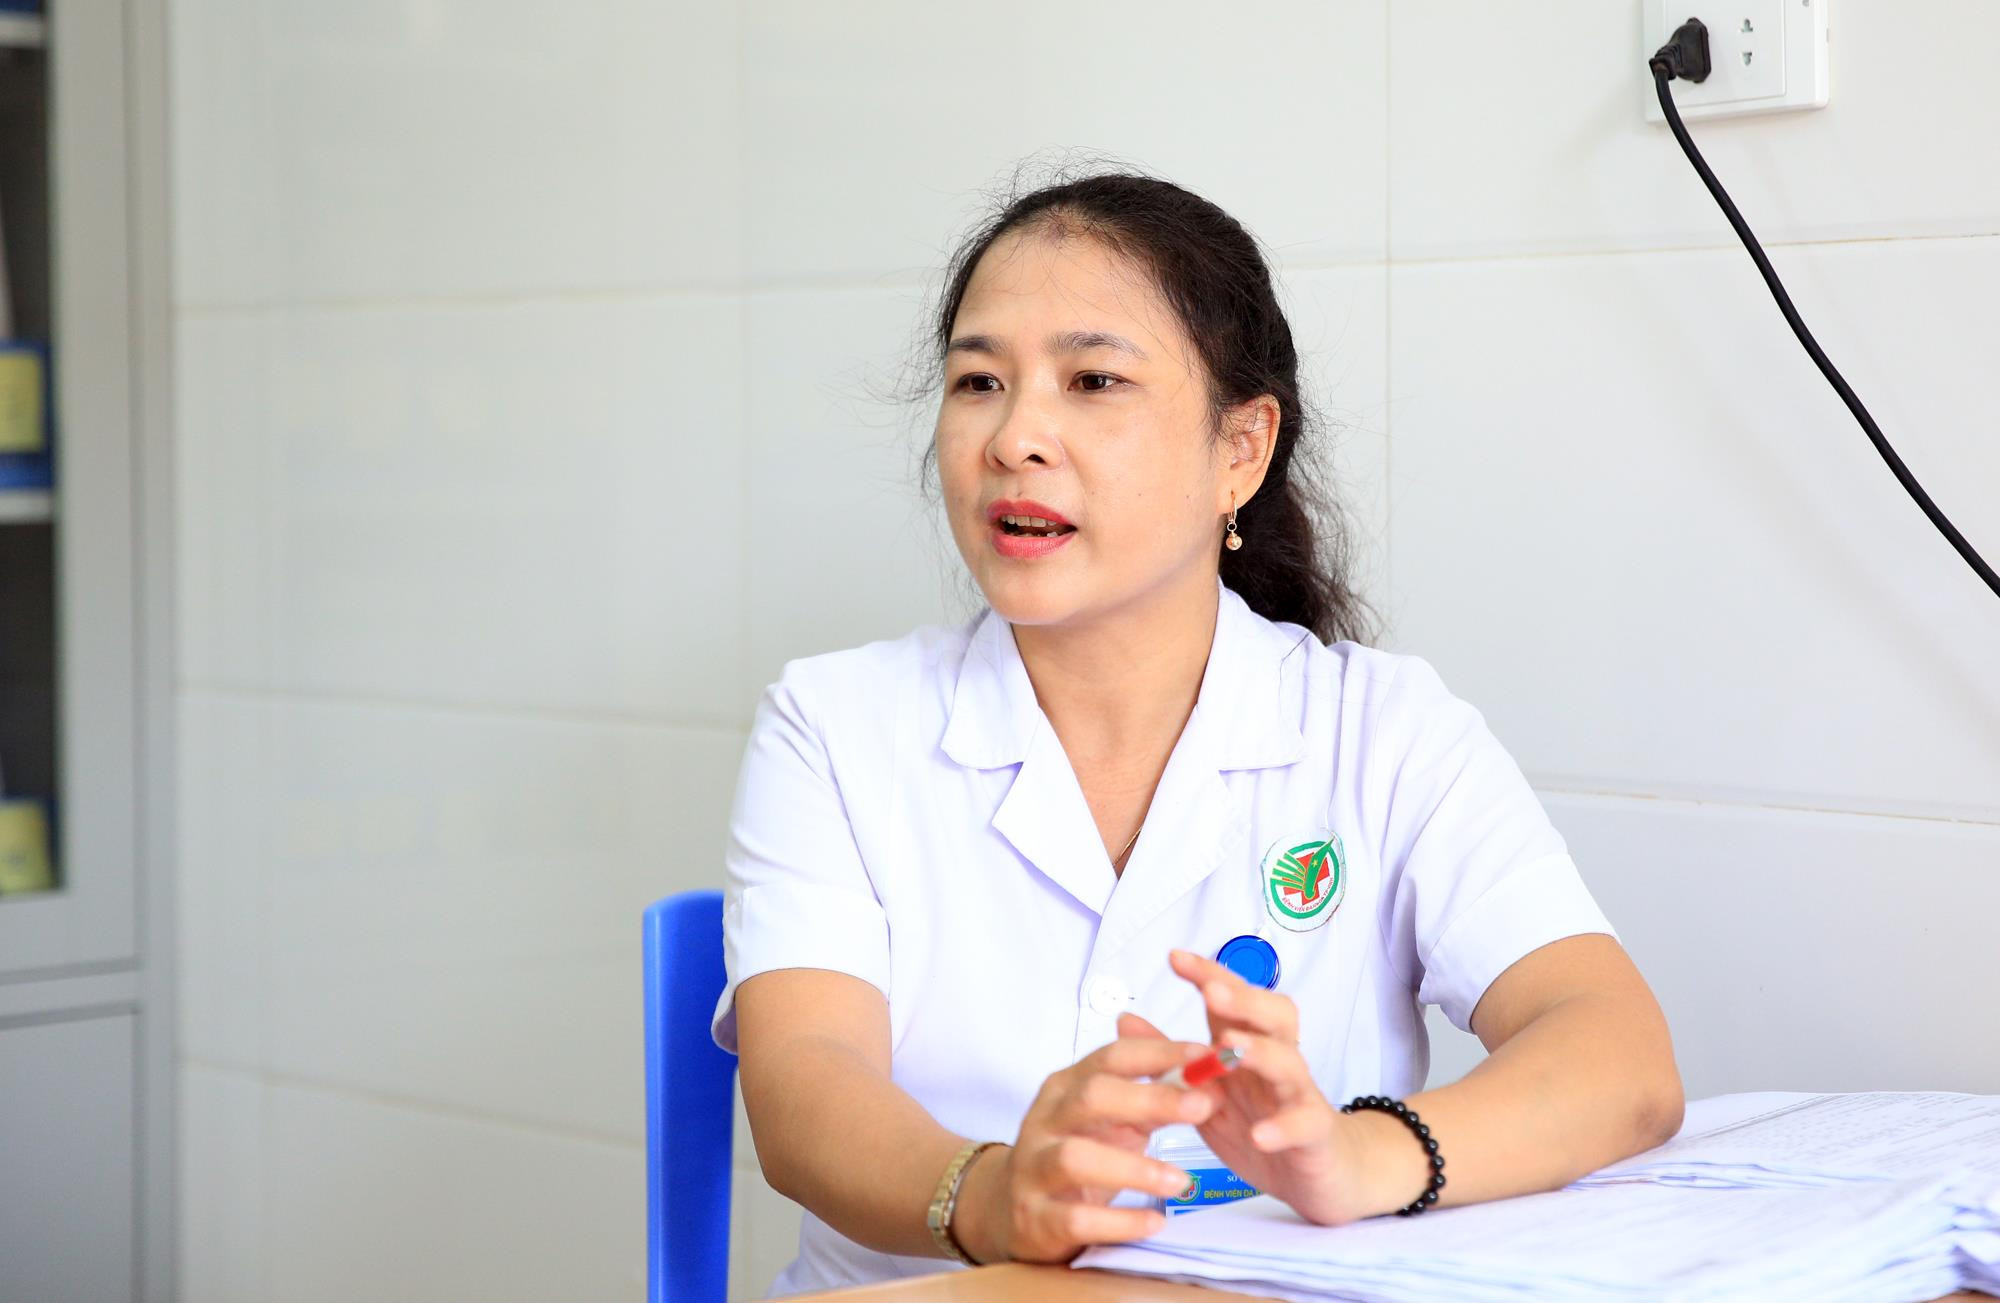 Bác sĩ Nguyễn Thị Thu Hà khuyến cao Người cao tuổi cần ăn uống đủ chất, chú ý việc sử dụng điều hòa đúng cách để phòng bệnh. Ảnh: Hồ Phương